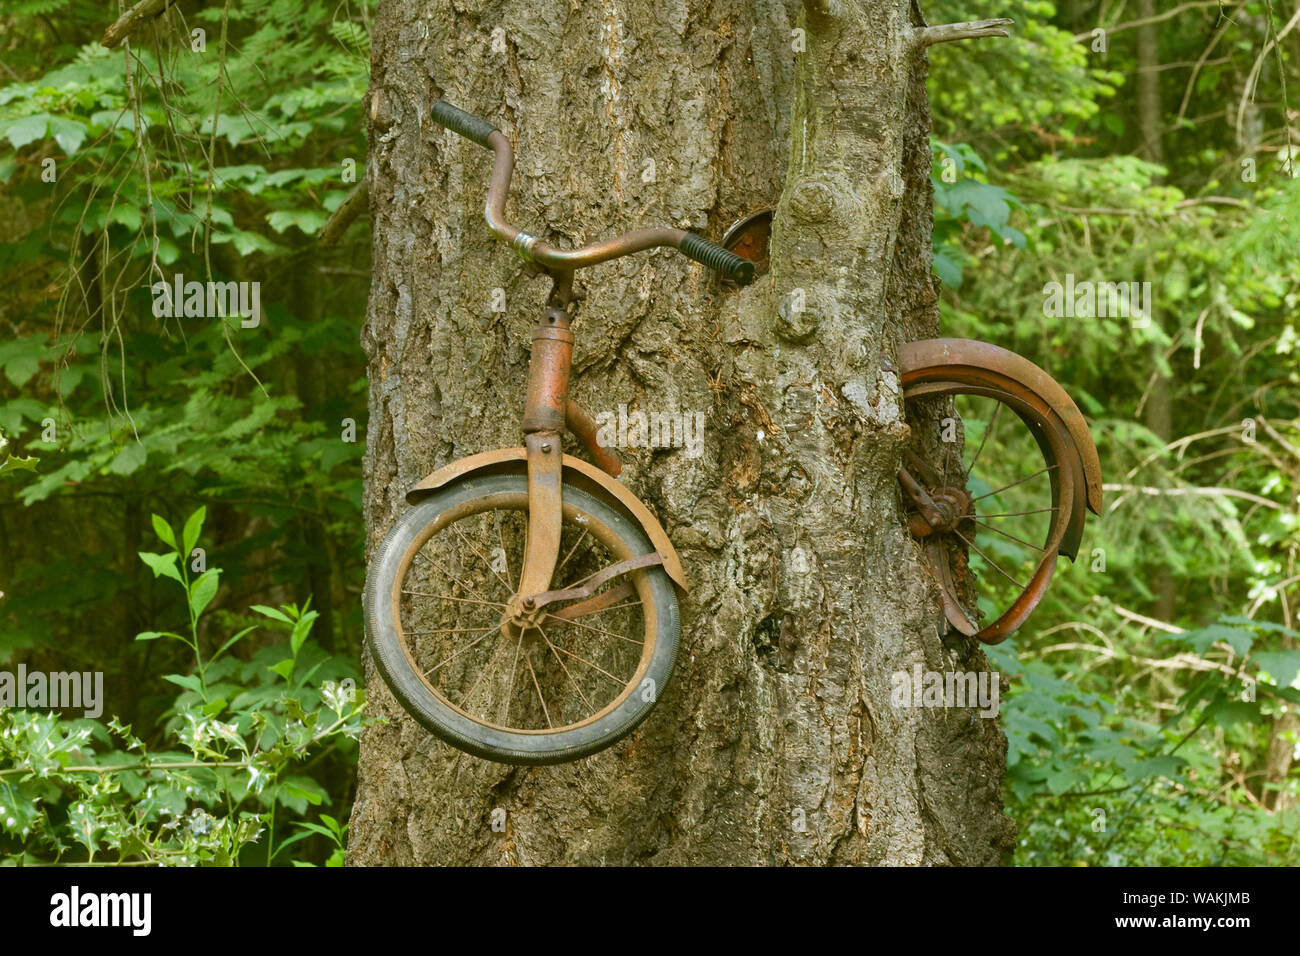 Vashon Island, nello Stato di Washington, USA. Vecchia moto cresciuta in una struttura ad albero. Una forma di arborsculpting. (Solo uso editoriale) Foto Stock